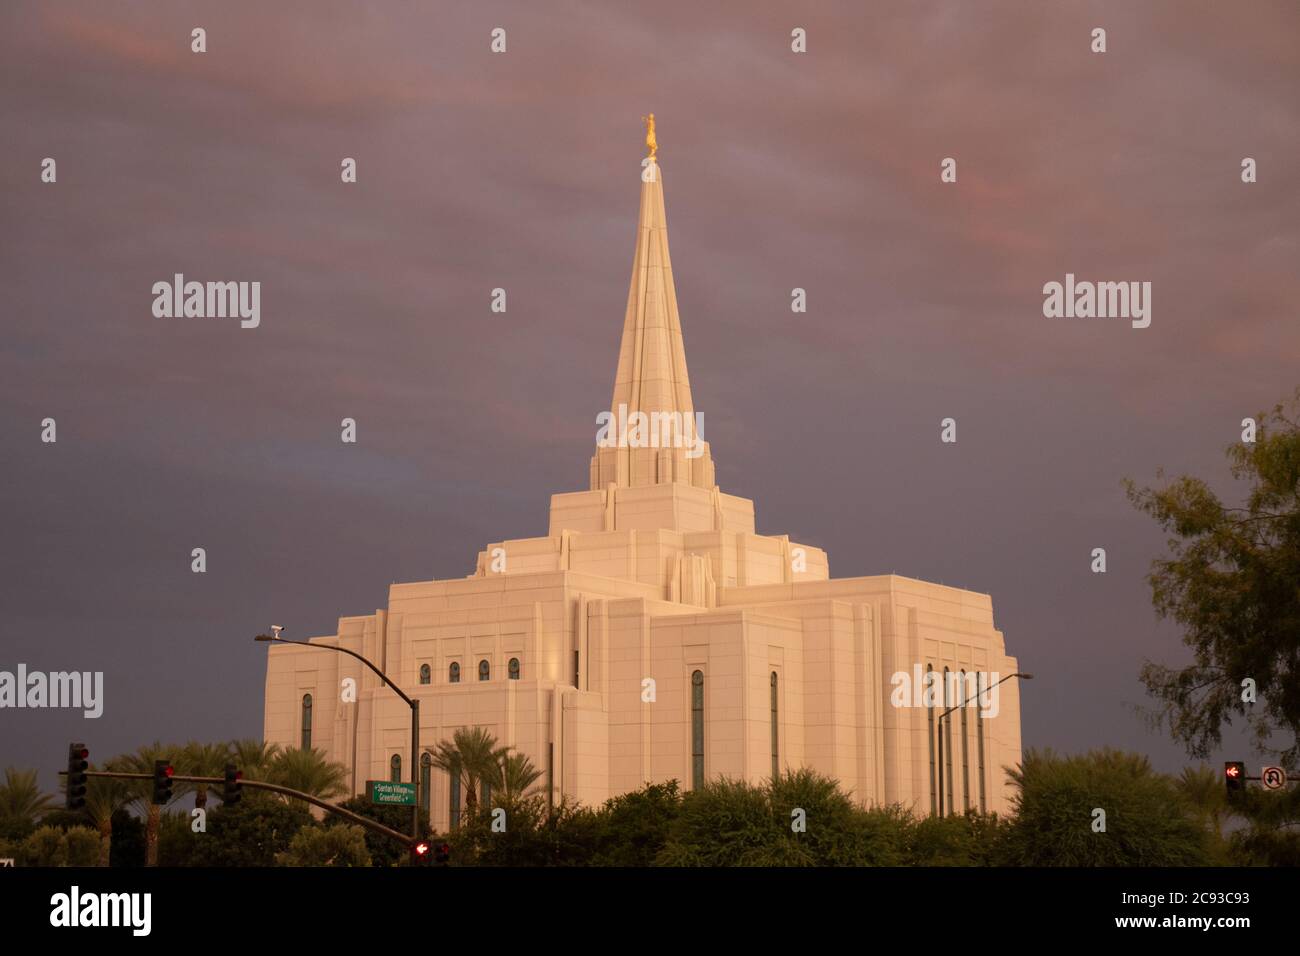 LDS / Mormon Temple in Gilbert Arizona At Sunset Stock Photo